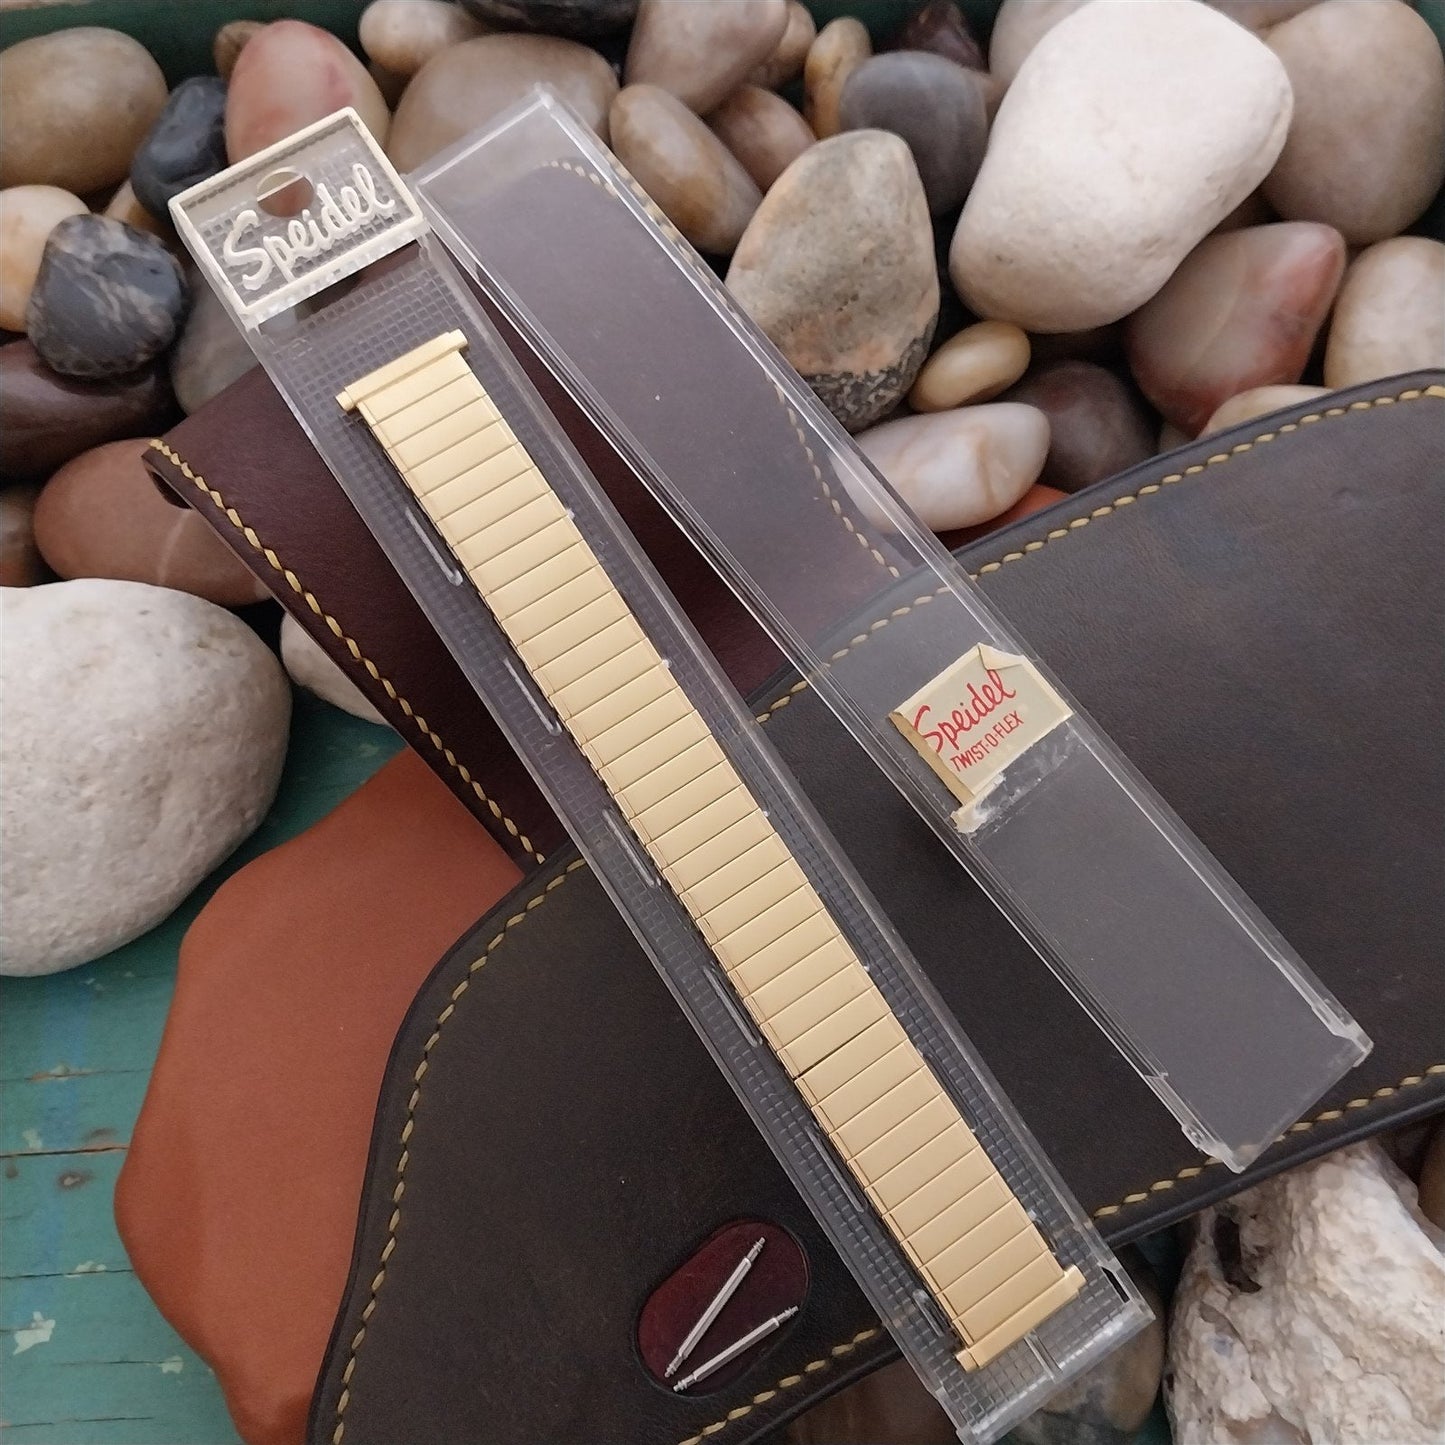 16mm 18mm 19mm Gold-Tone Speidel Twistoflex Stretch 1970s Unused Watch Band